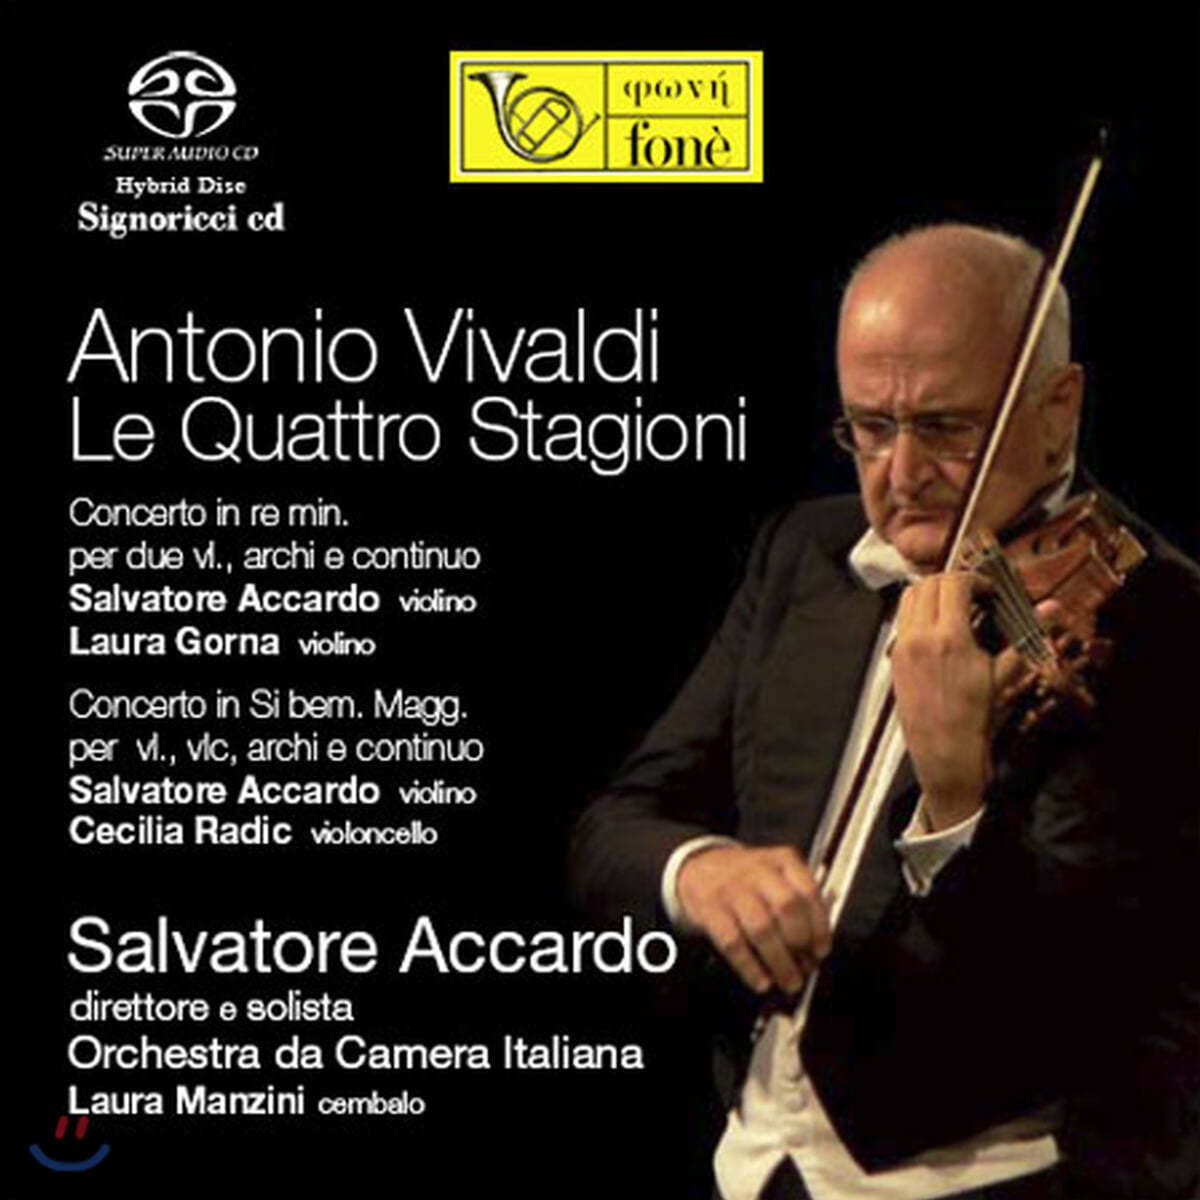 Salvatore Accardo 비발디: 사계, 2대의 바이올린 협주곡 - 아카르도, 카메라타 이탈리아